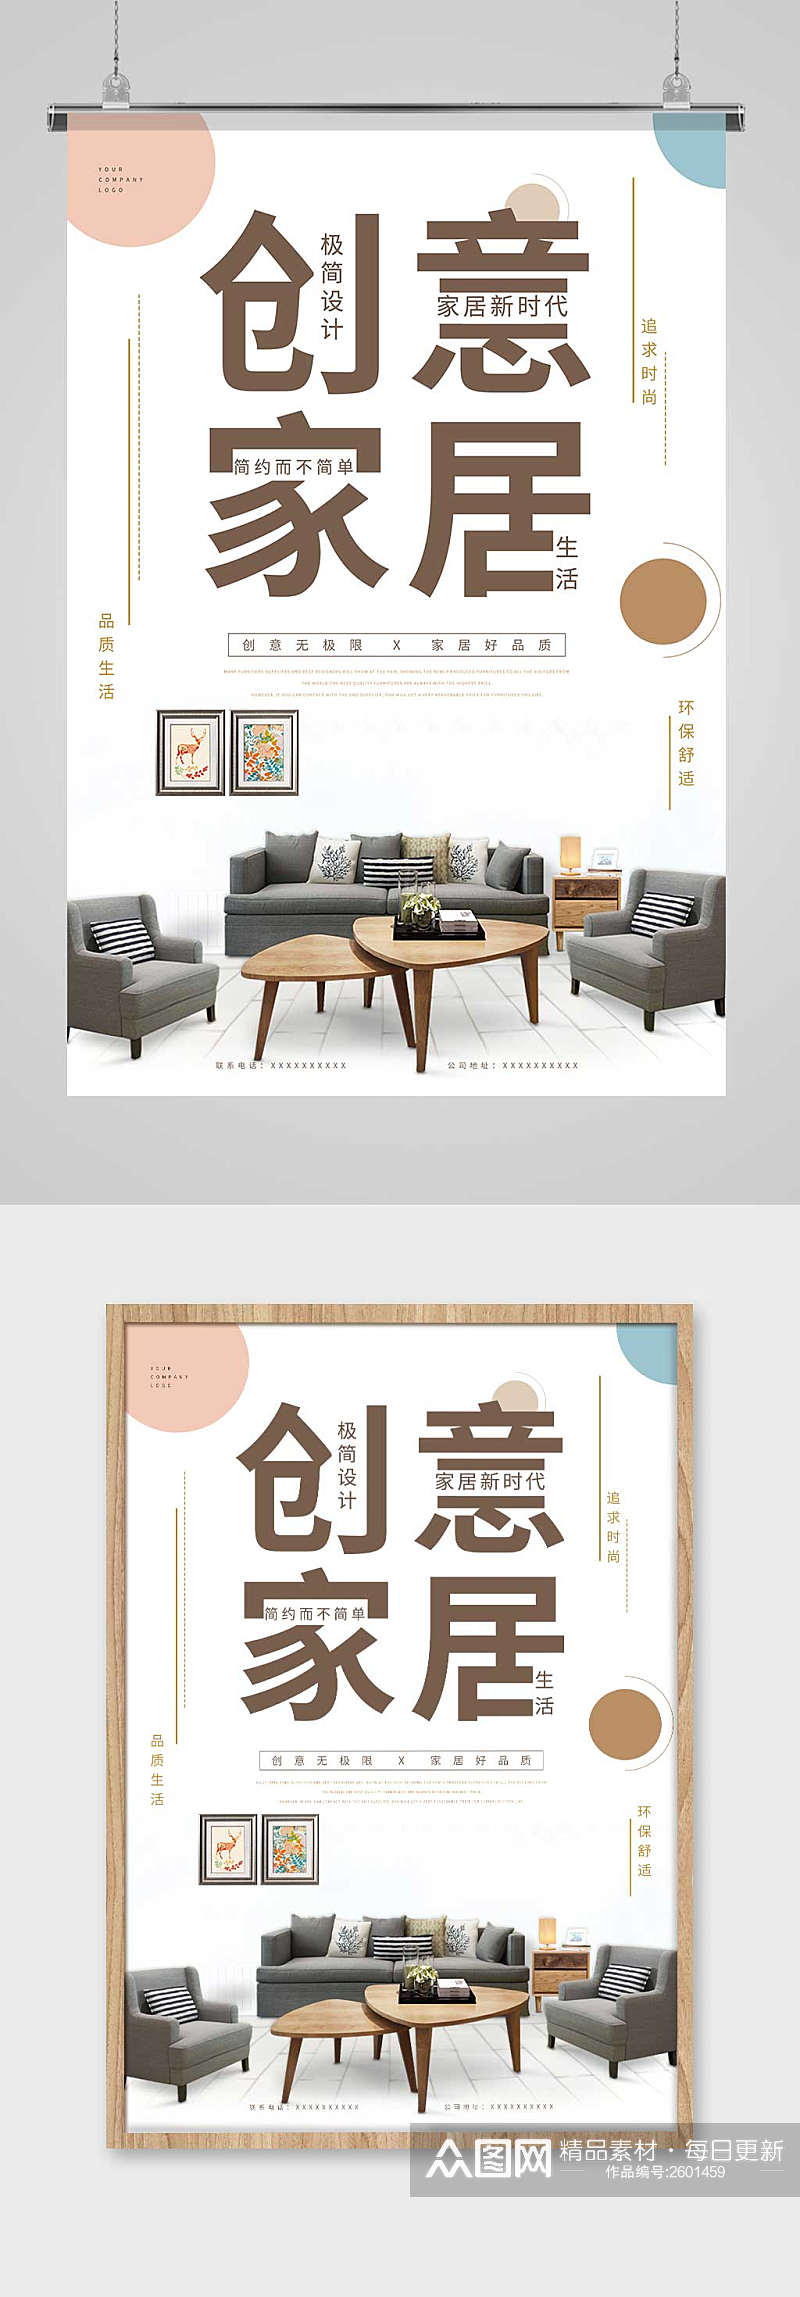 小清新风格创意家居家具海报设计素材